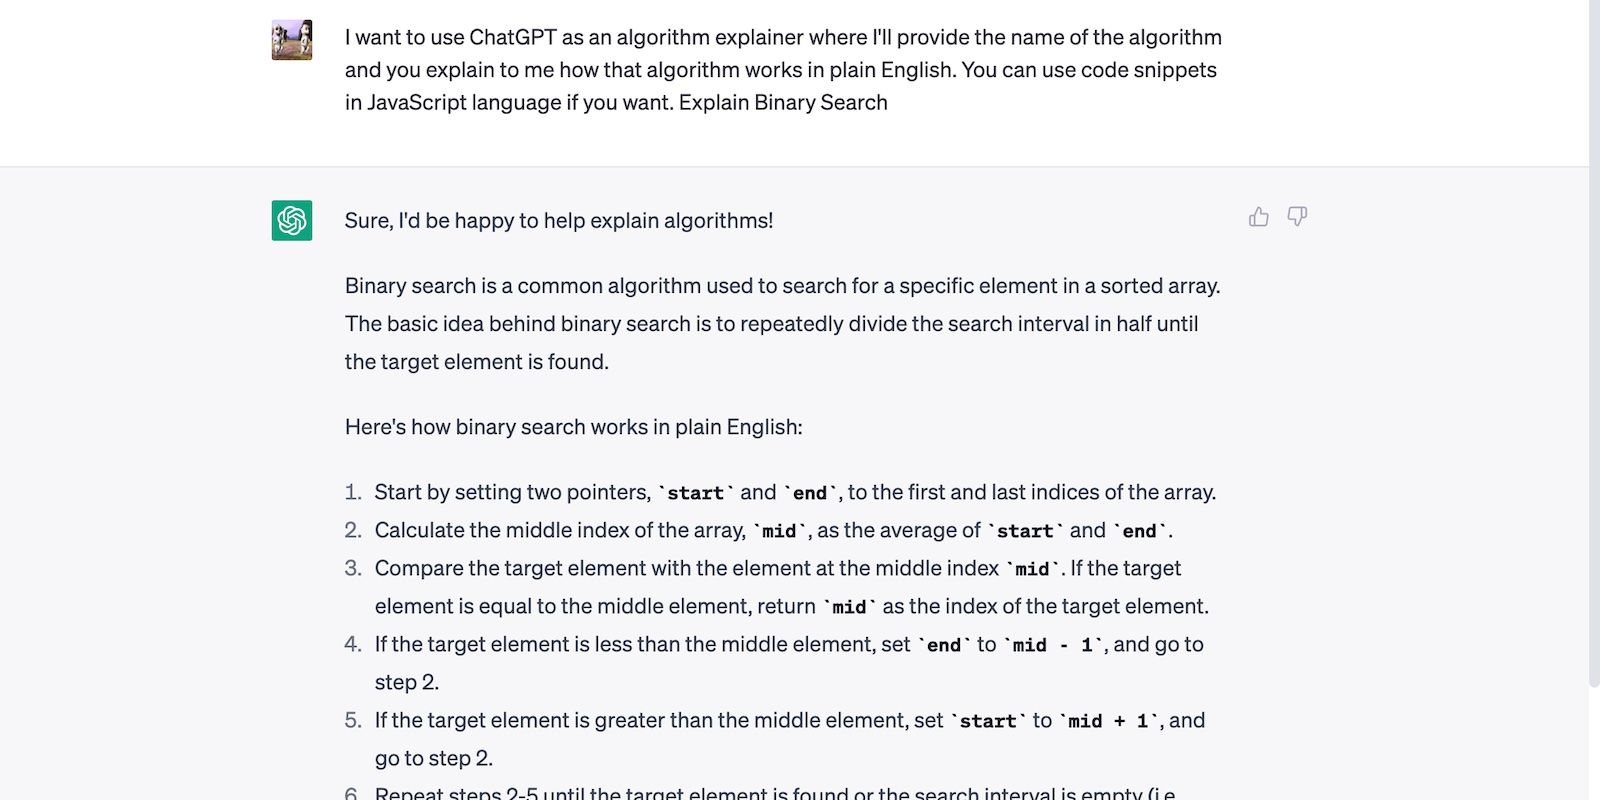 ChatGPT giải thích thuật toán Tìm kiếm nhị phân theo cách đơn giản